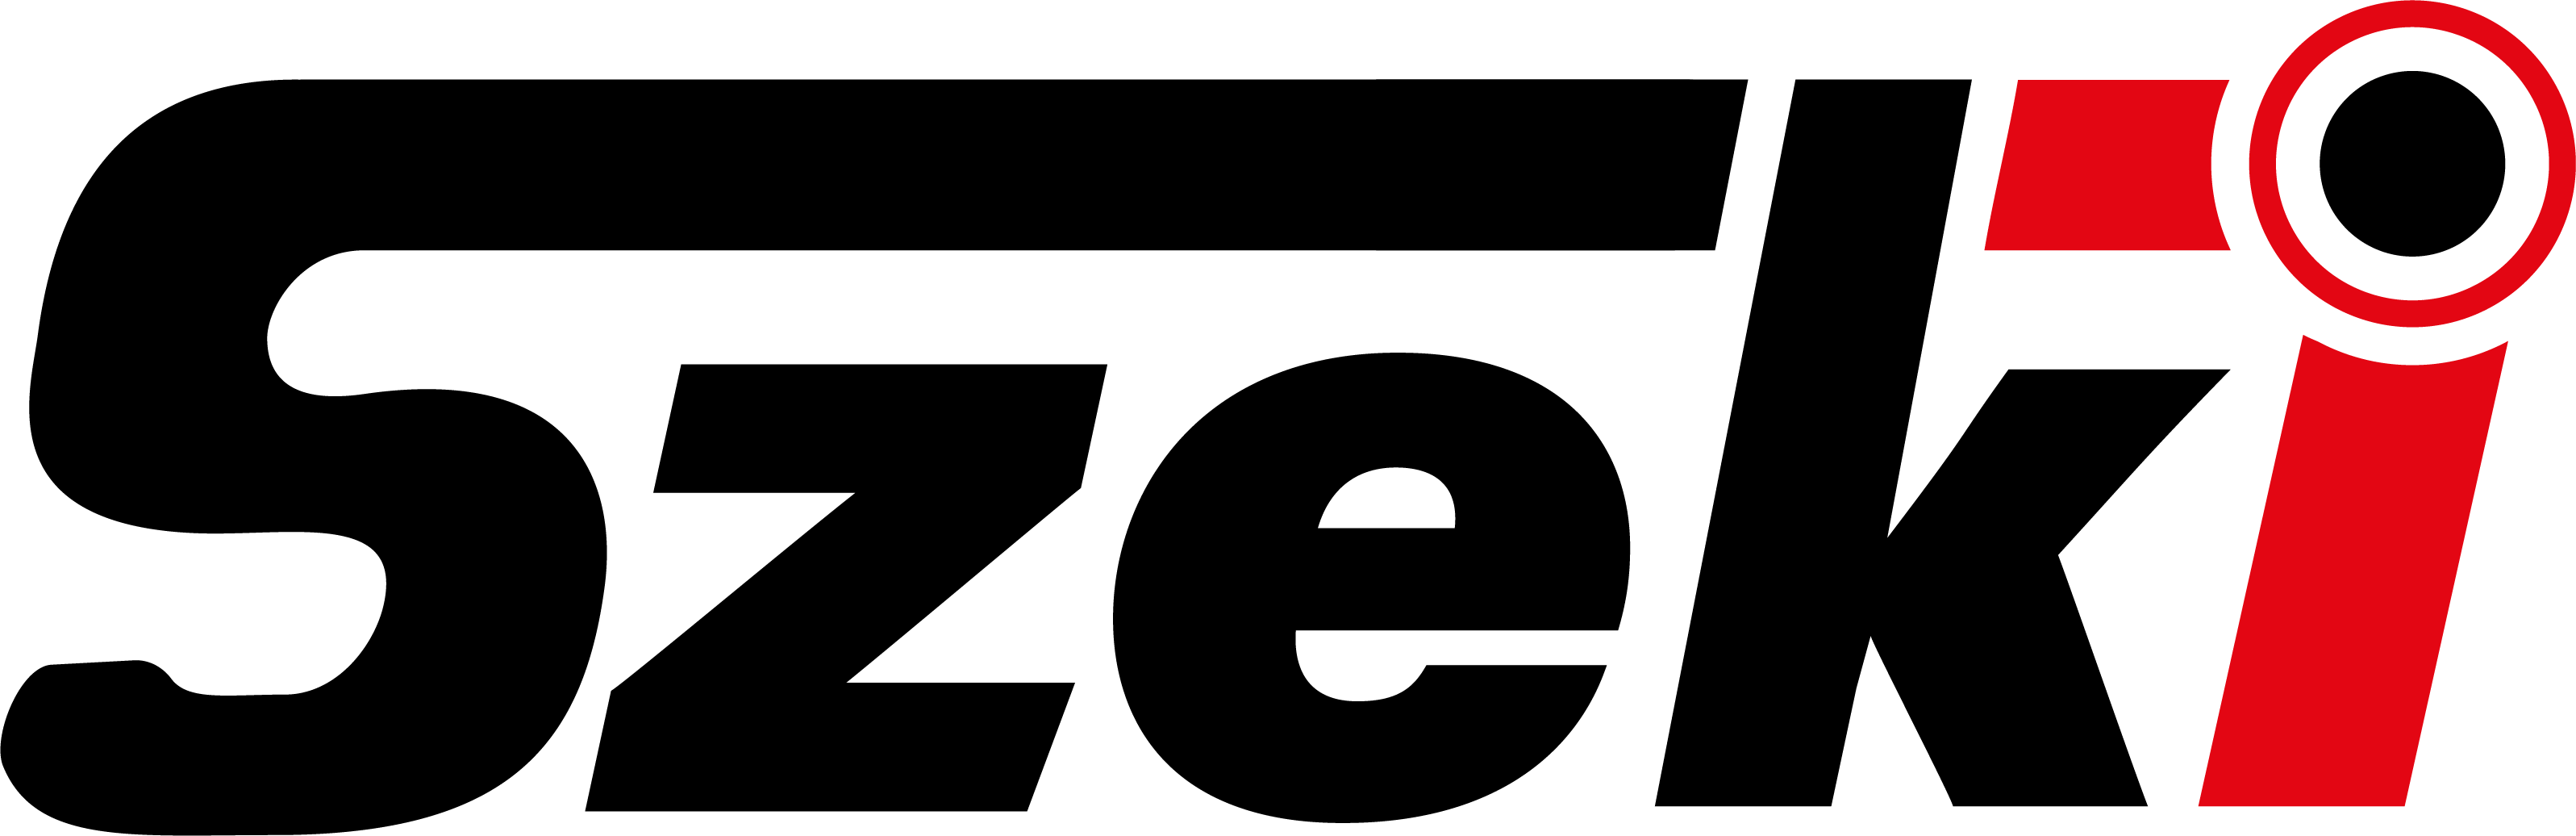 Szeki.hu logó